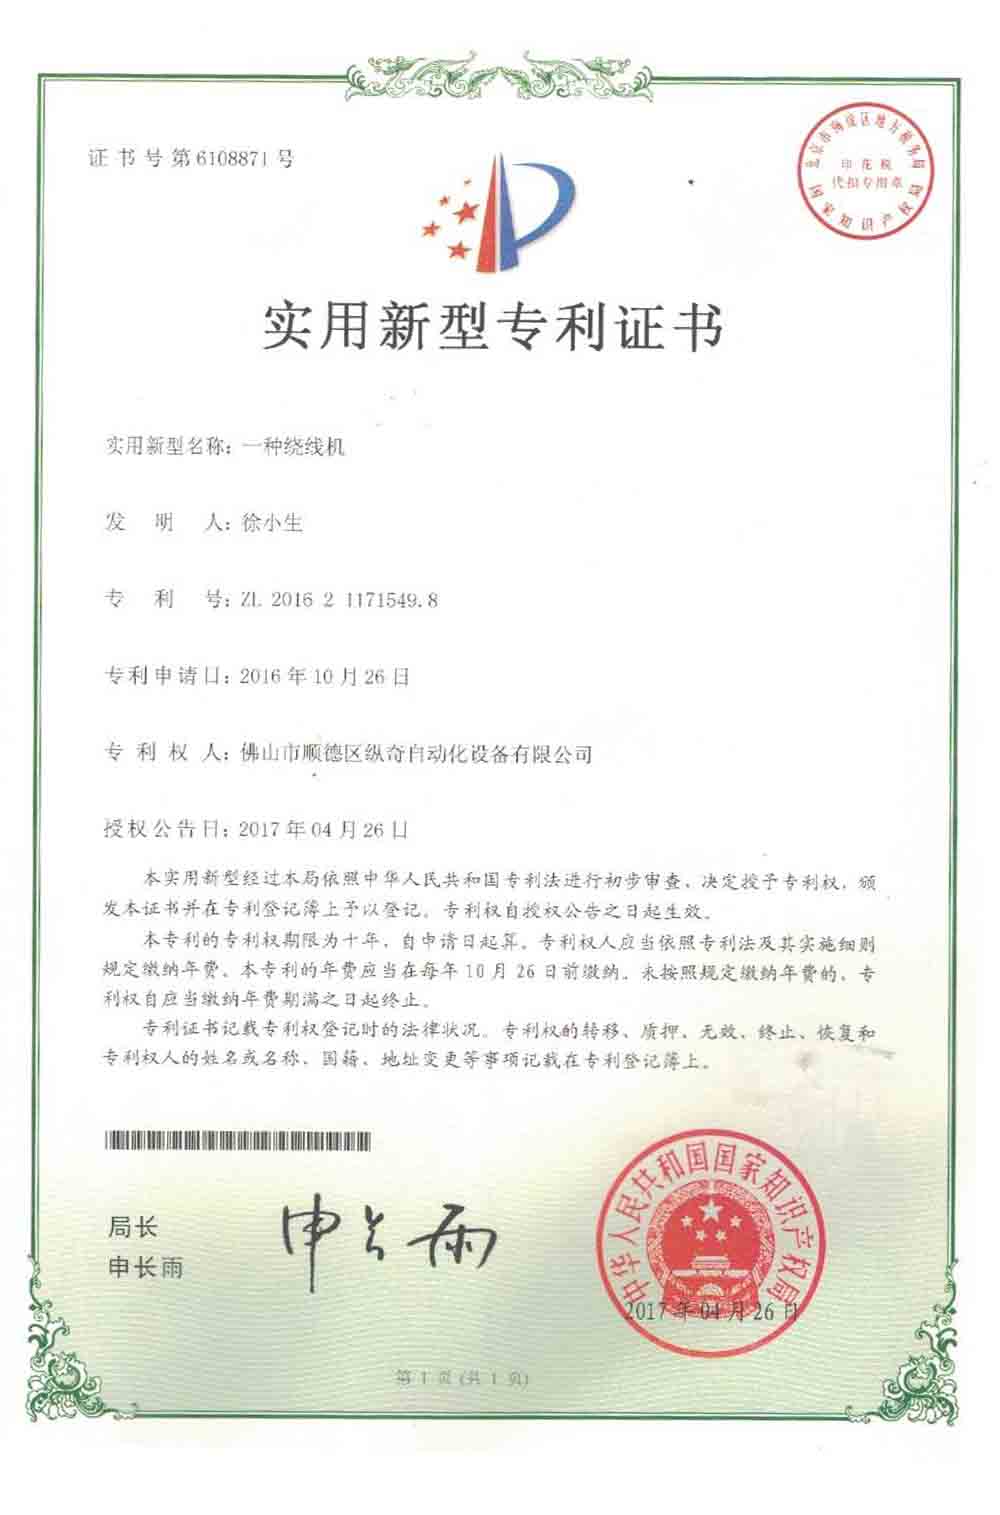 Certificato di brevetto per modello di utilità 4